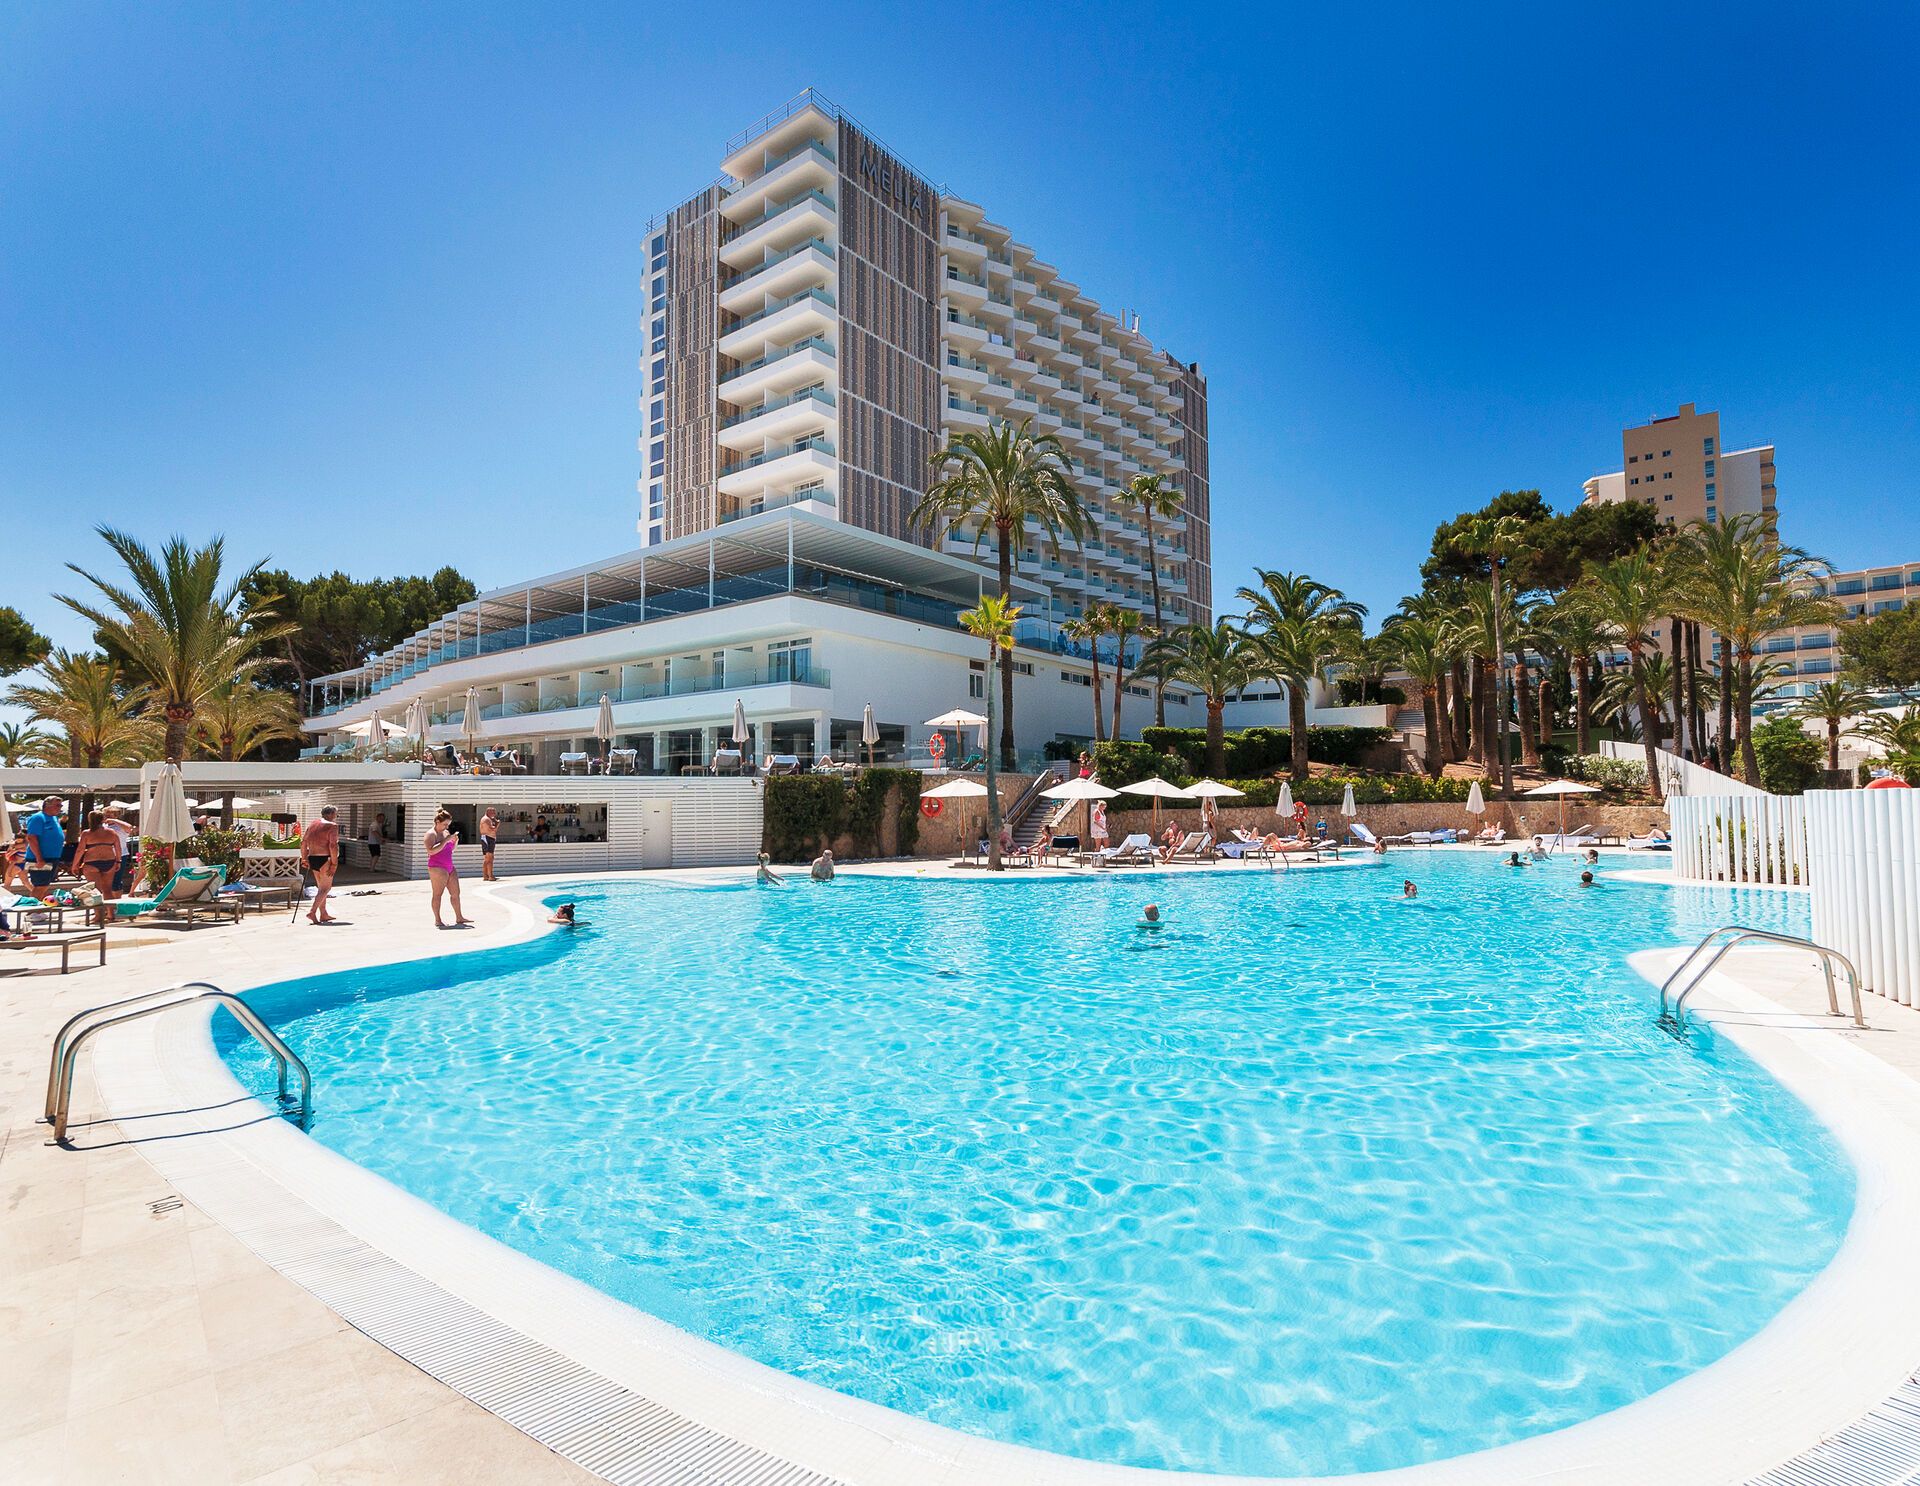 Hotel Melia Calvia Beach - 4*